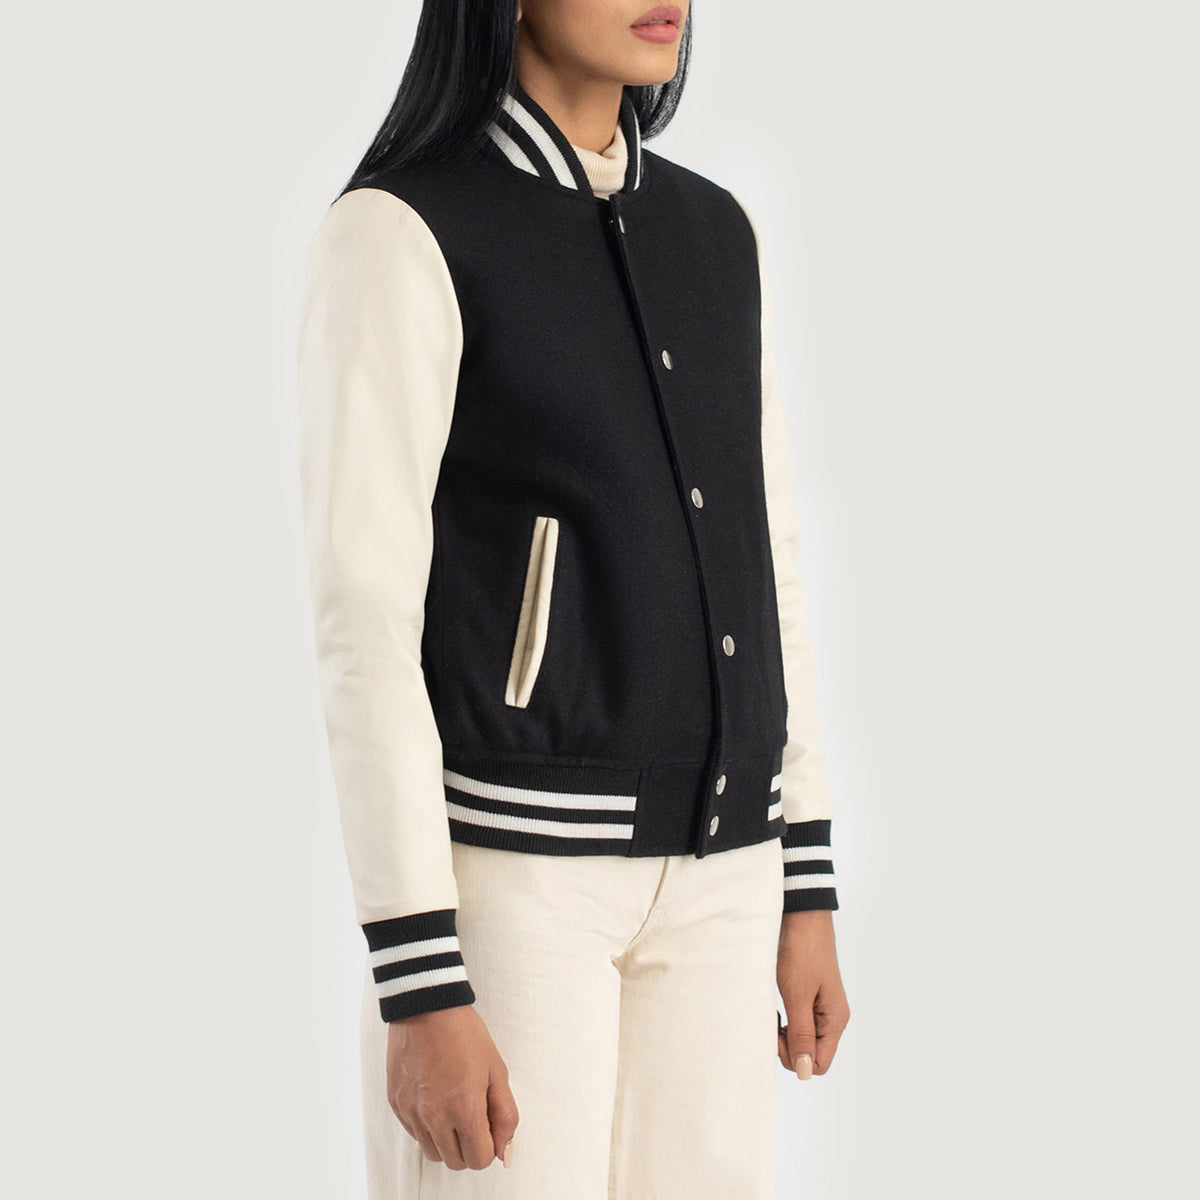 Savant Black & White Hybrid Varsity Jacket